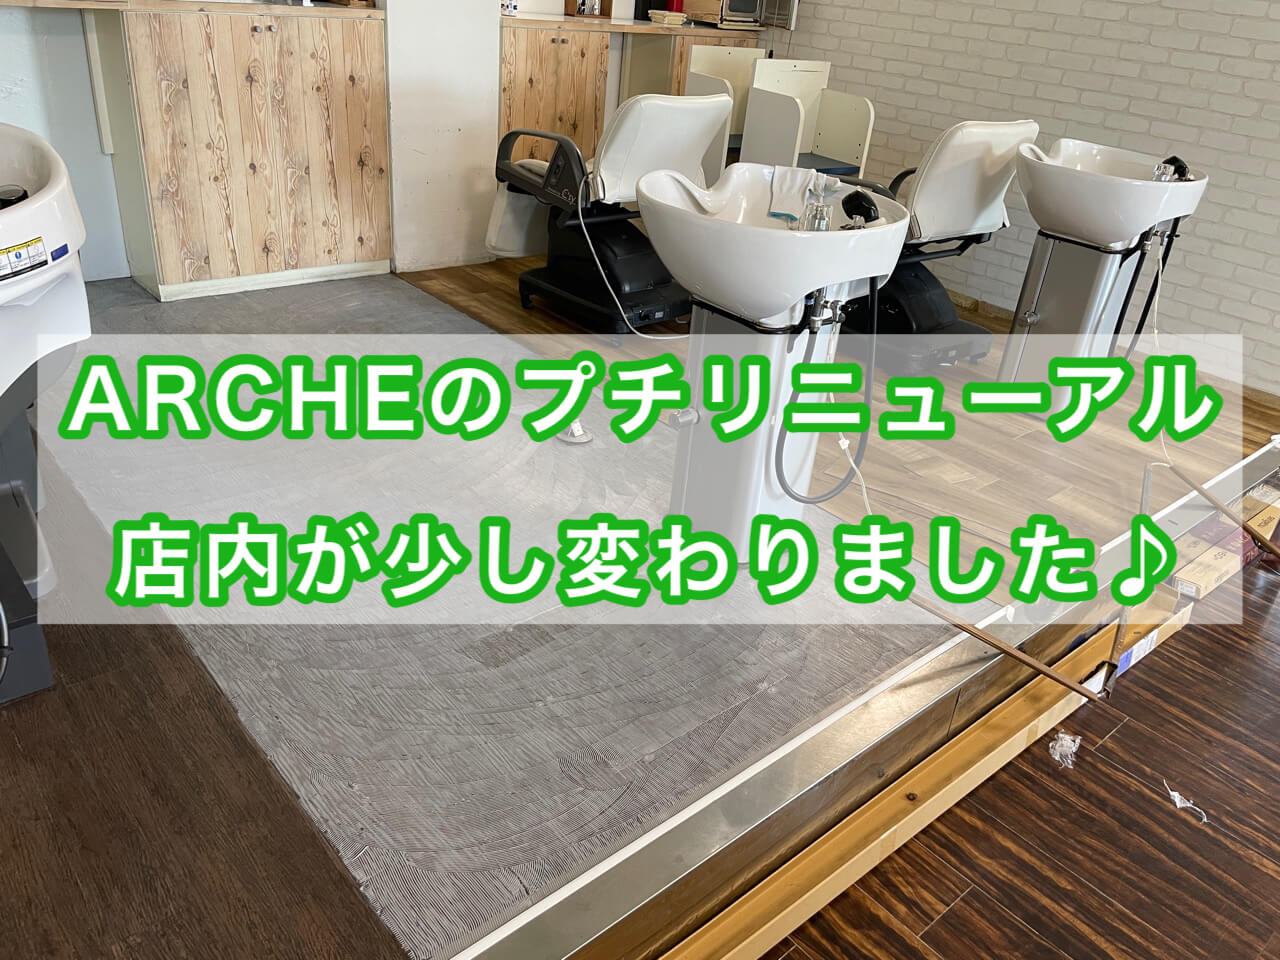 ARCHEのリニューアル